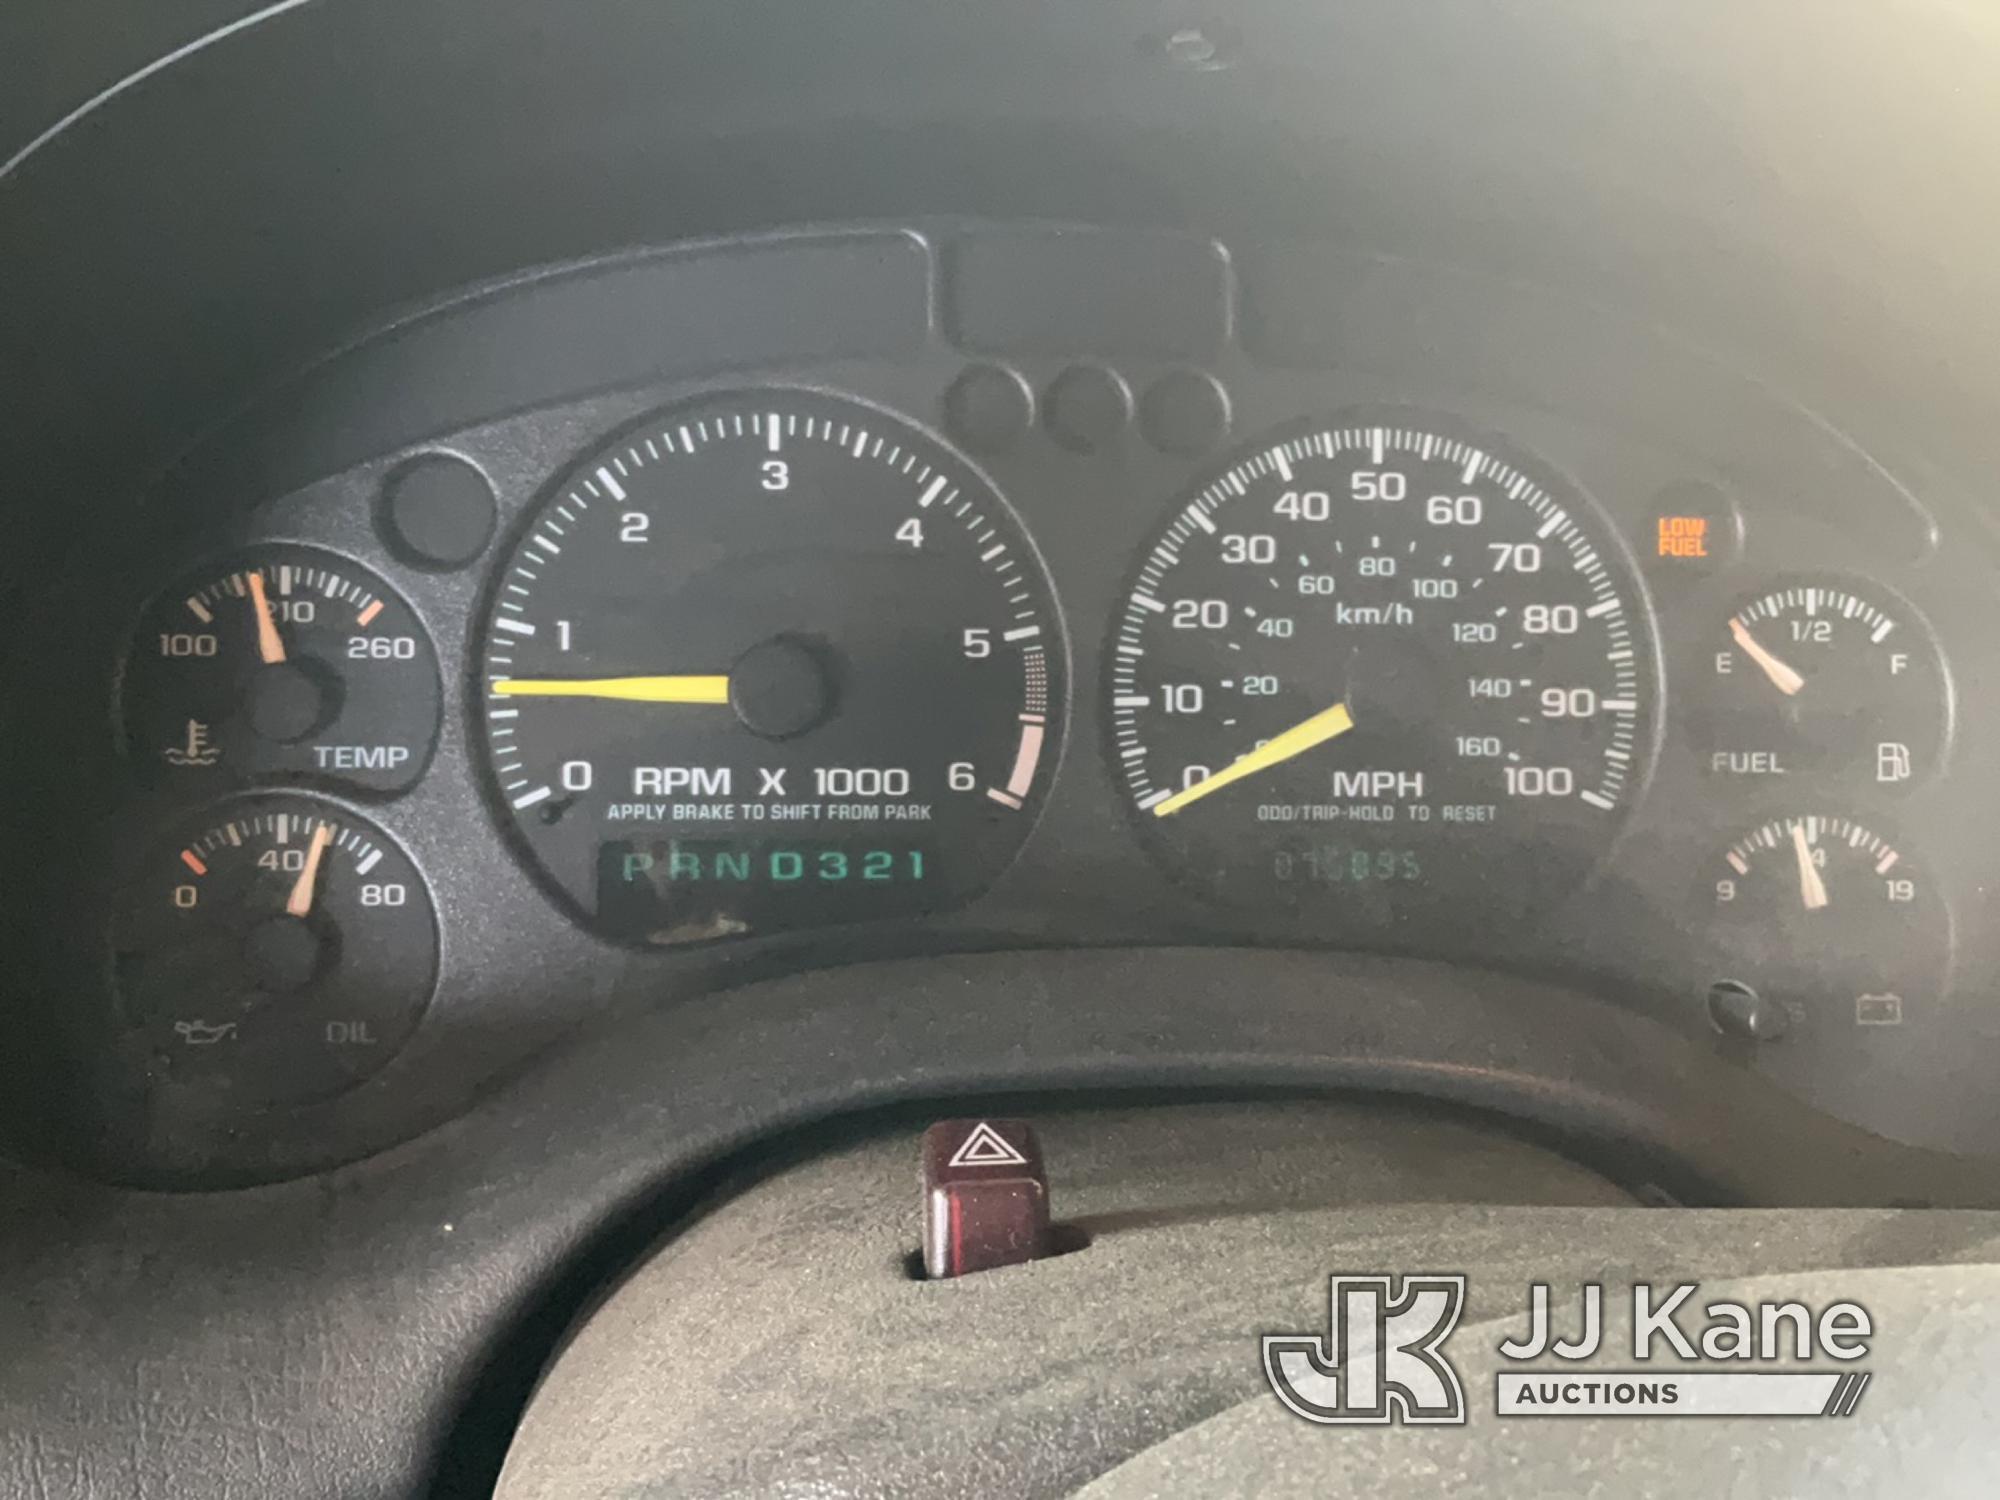 (Jurupa Valley, CA) 2000 Chevrolet S10 Pickup Truck Runs & Moves, Running Rough